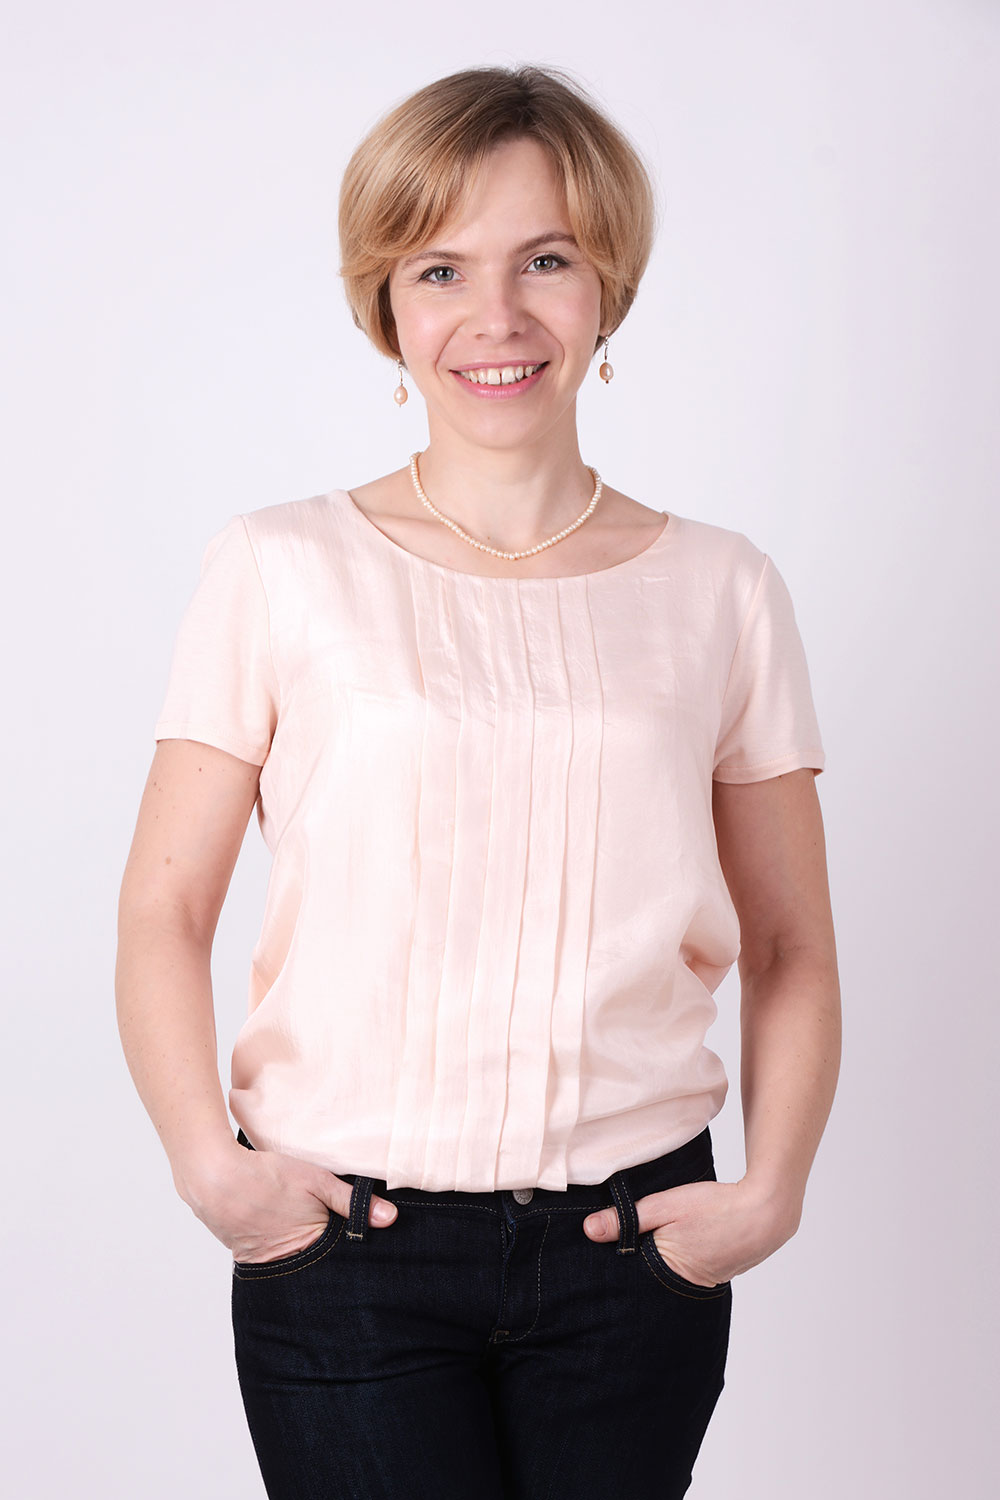 Gabriela Nowakowska